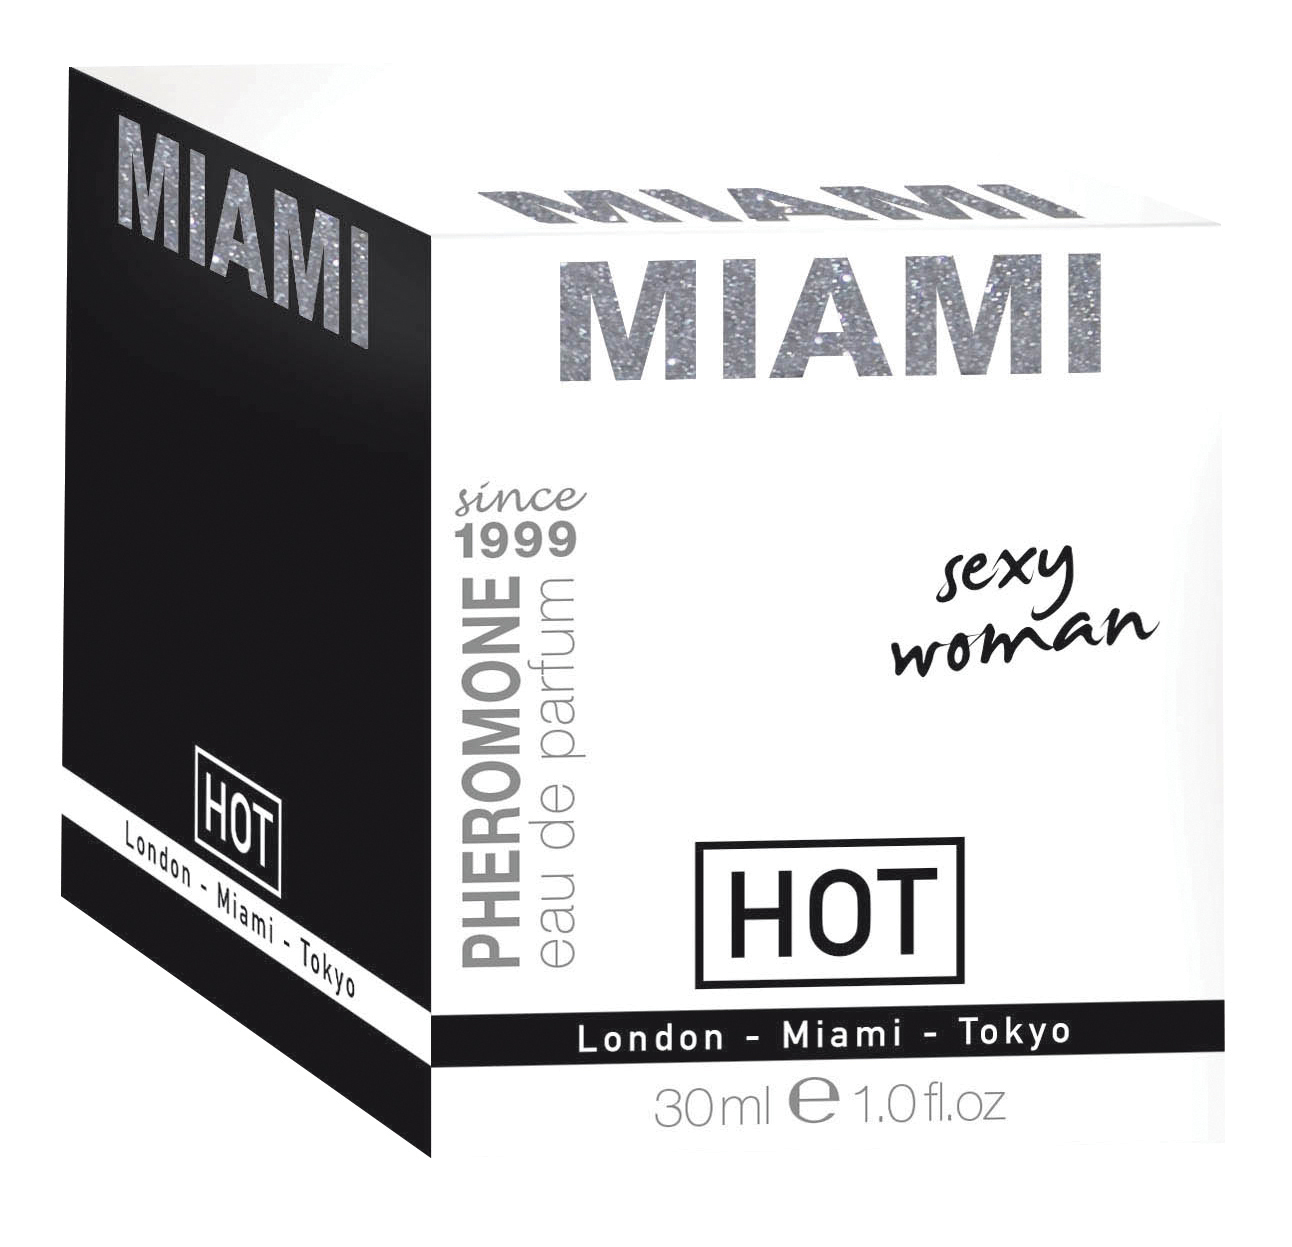 HOT Pheromon-Parfum Miami sexy woman 30ml